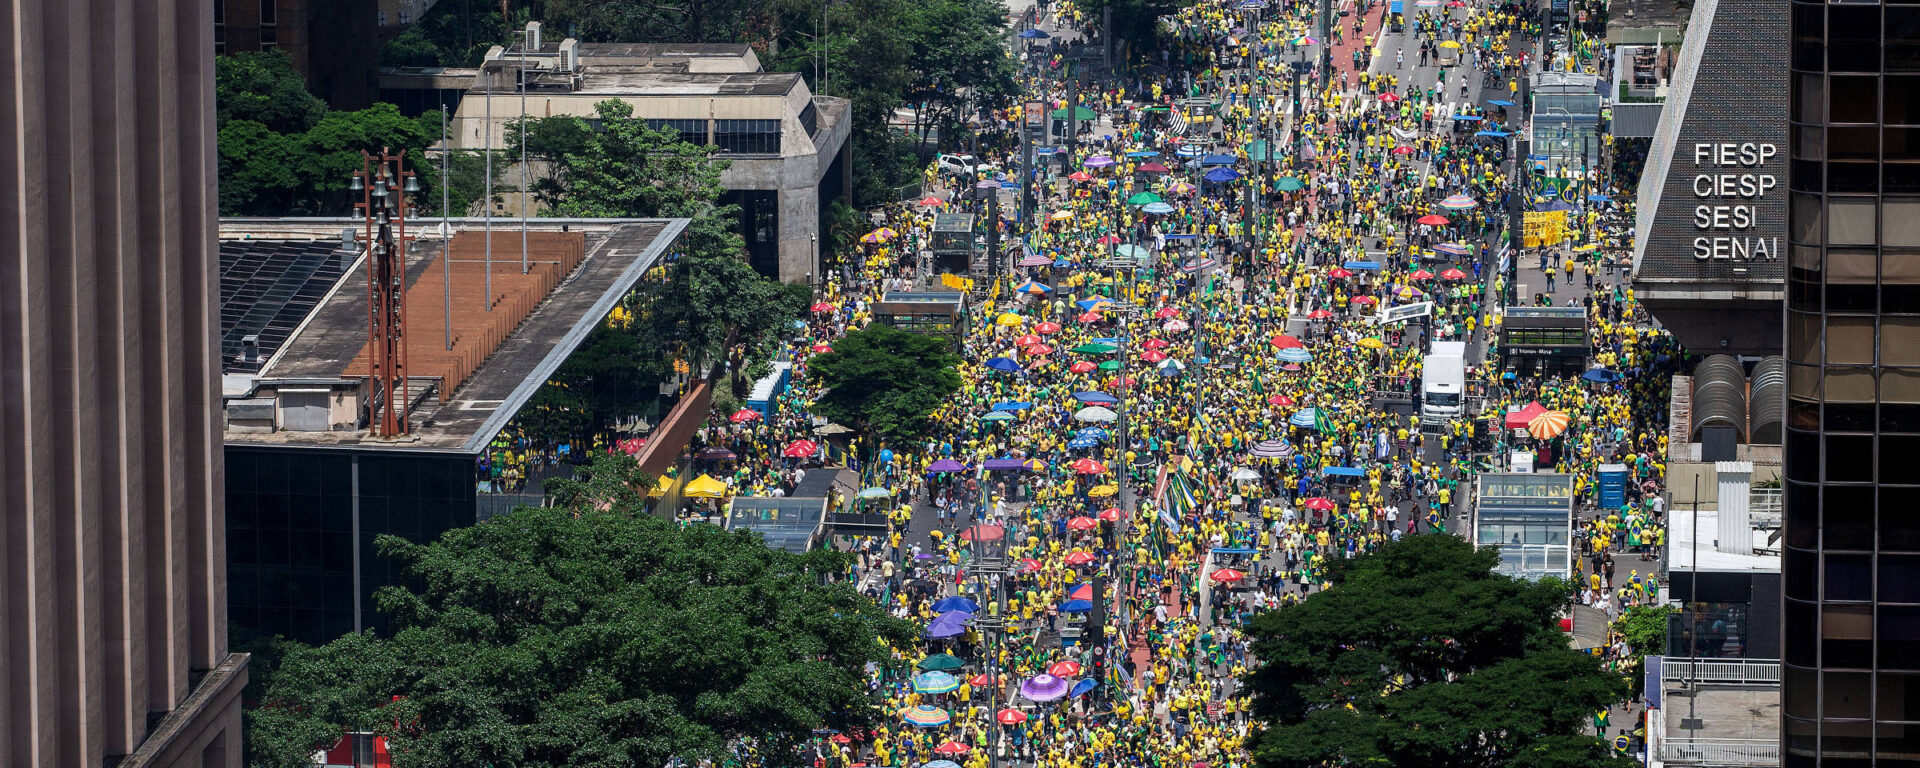 Bolsonaro reúne milhares na Paulista, nega trama golpista e fala em abuso de alguns3